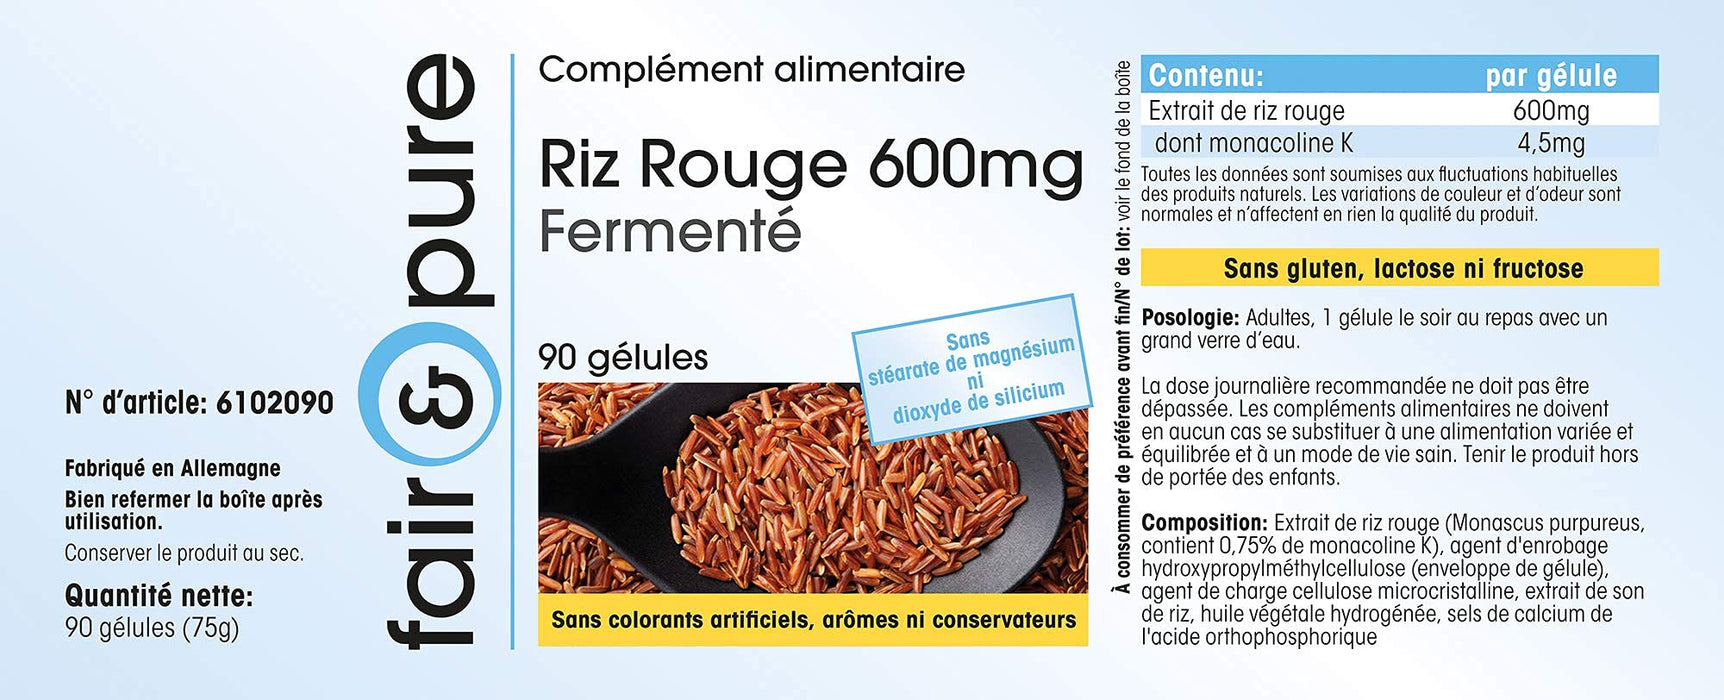 Red Rice Capsules 600mg z 4,5mg Monacolin K na kapsułkę - fermentowany czerwony ryż - wegańskie - bez stearynianu magnezu - 90 kapsułek